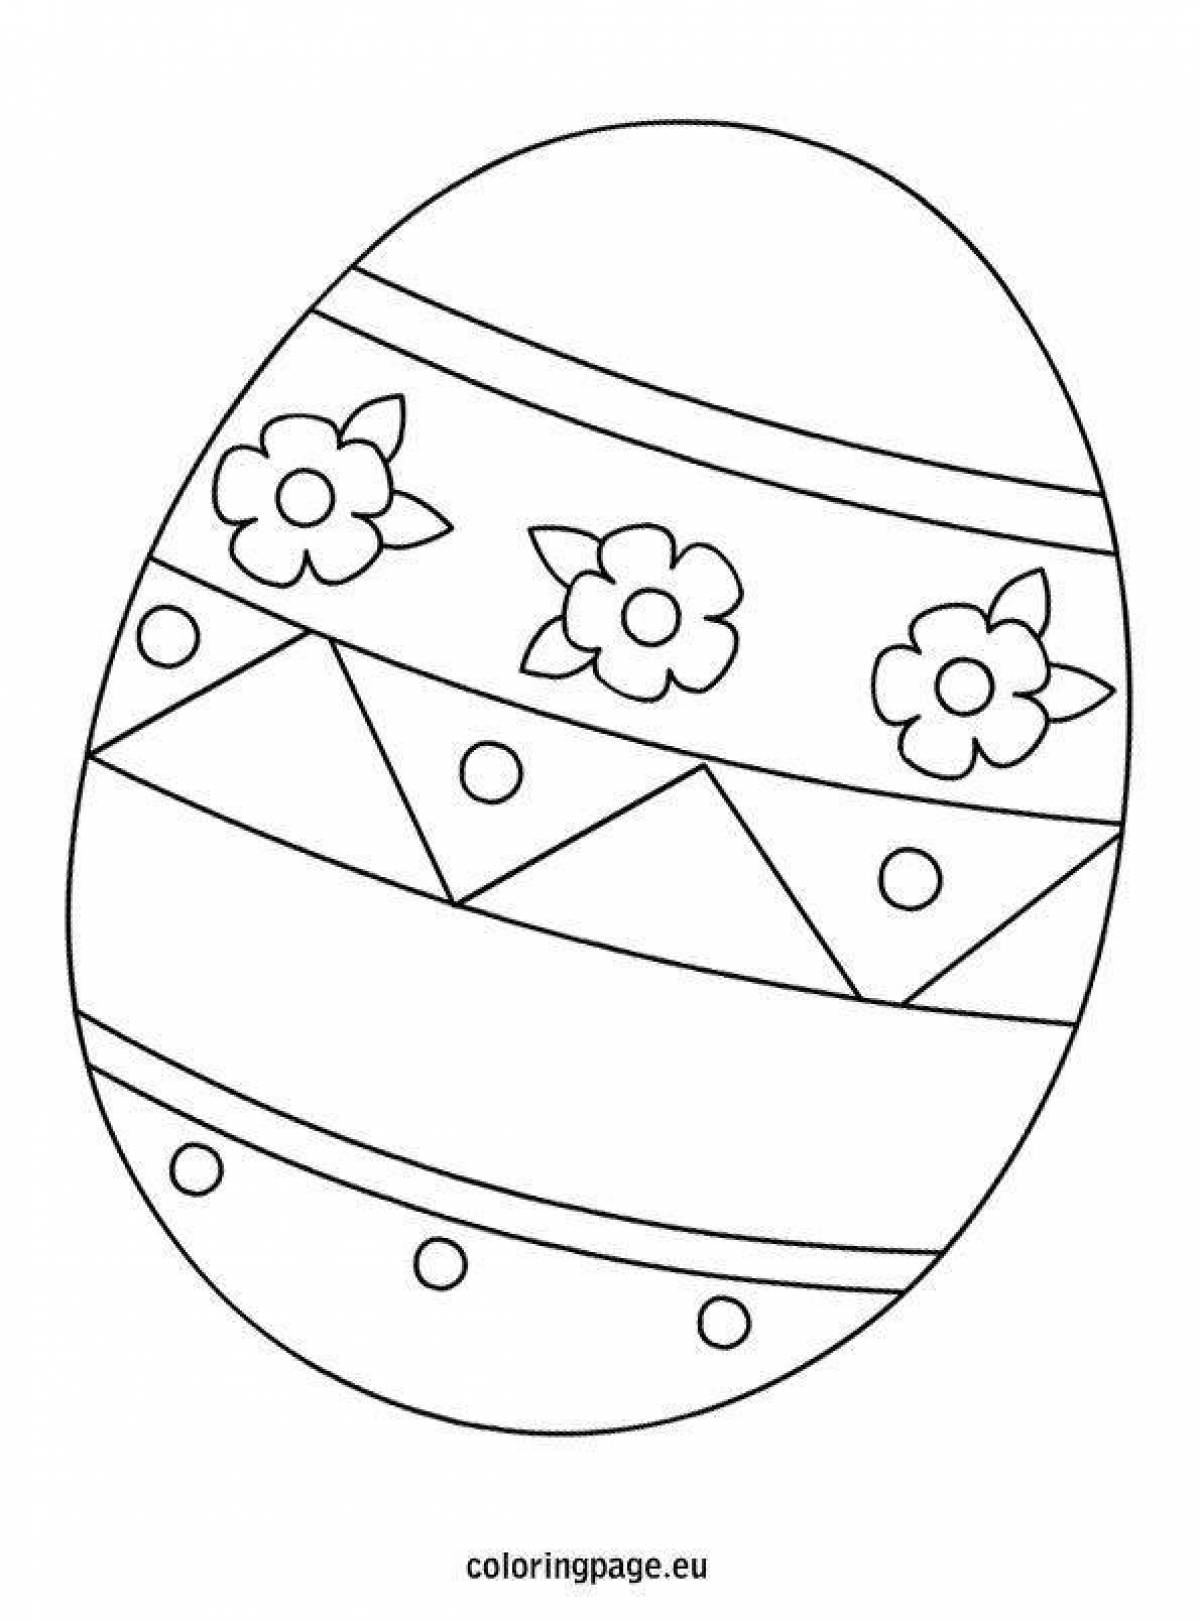 Egg for kids #3